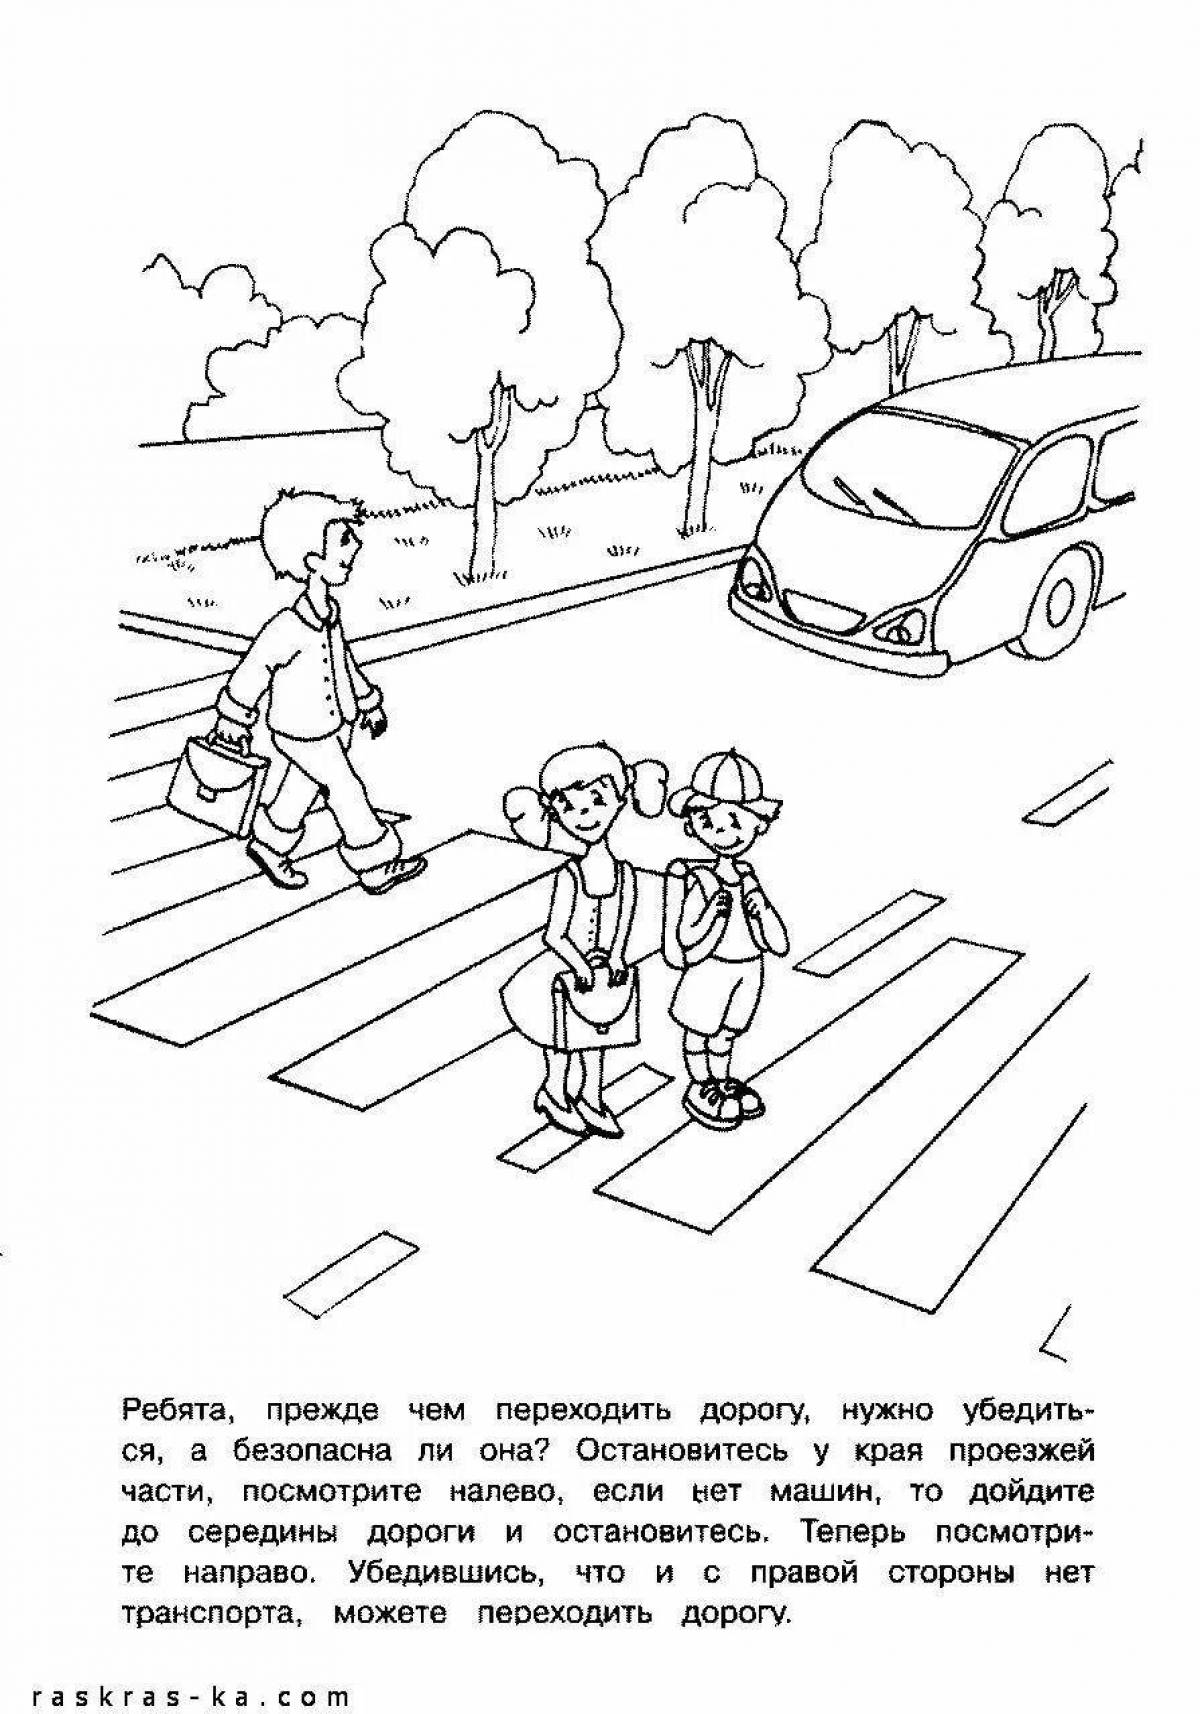 For children traffic rules for kindergarten #13